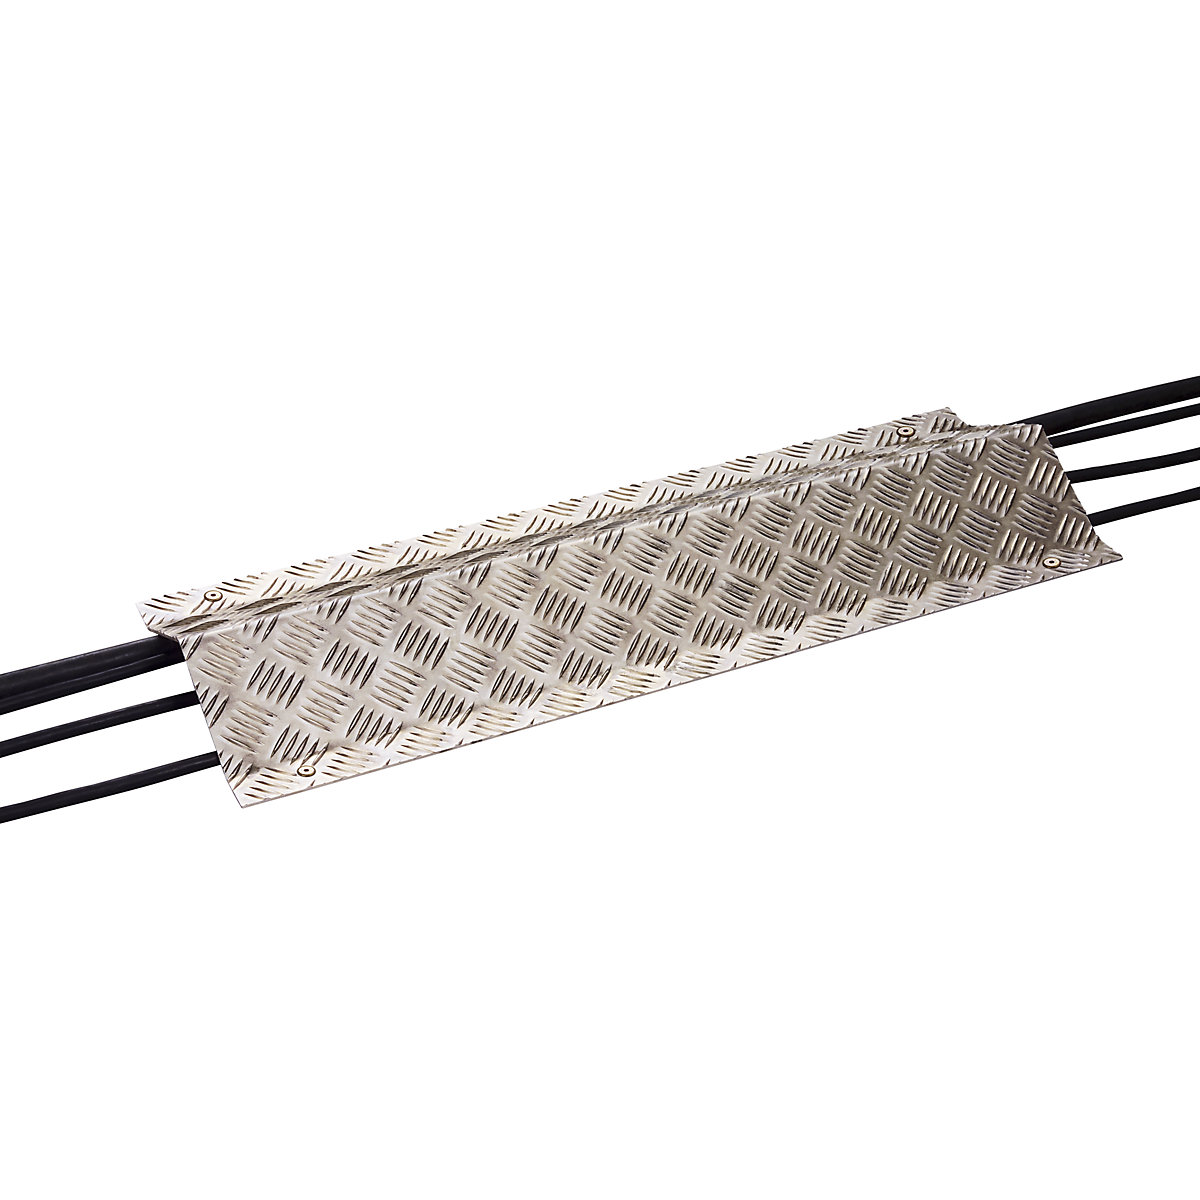 Aluminium cable duct - Mottez